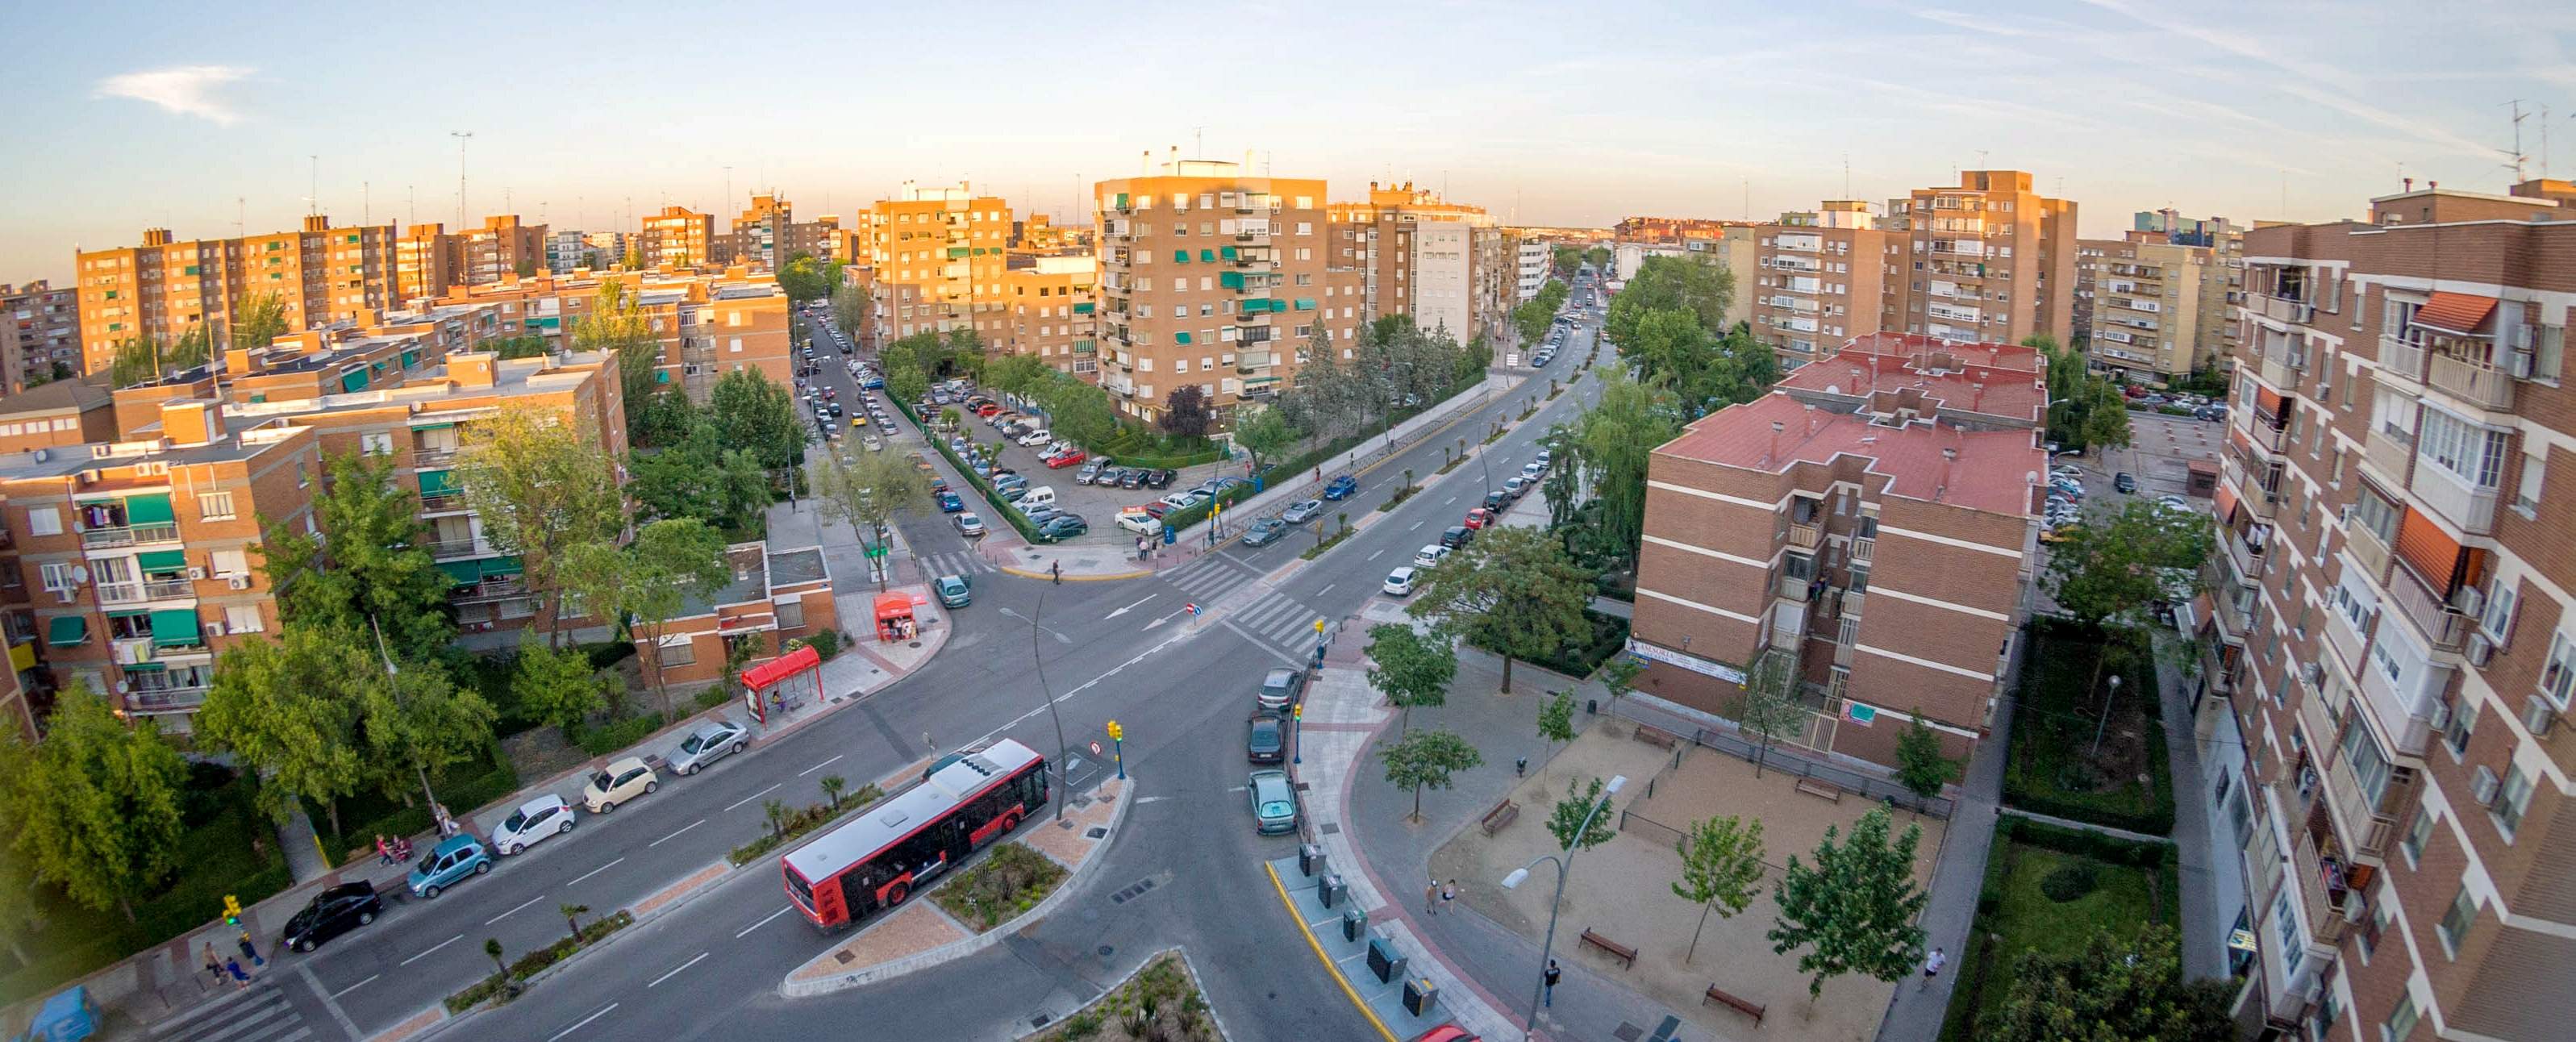 Los 10 municipios de España con más demanda para alquilar vivienda